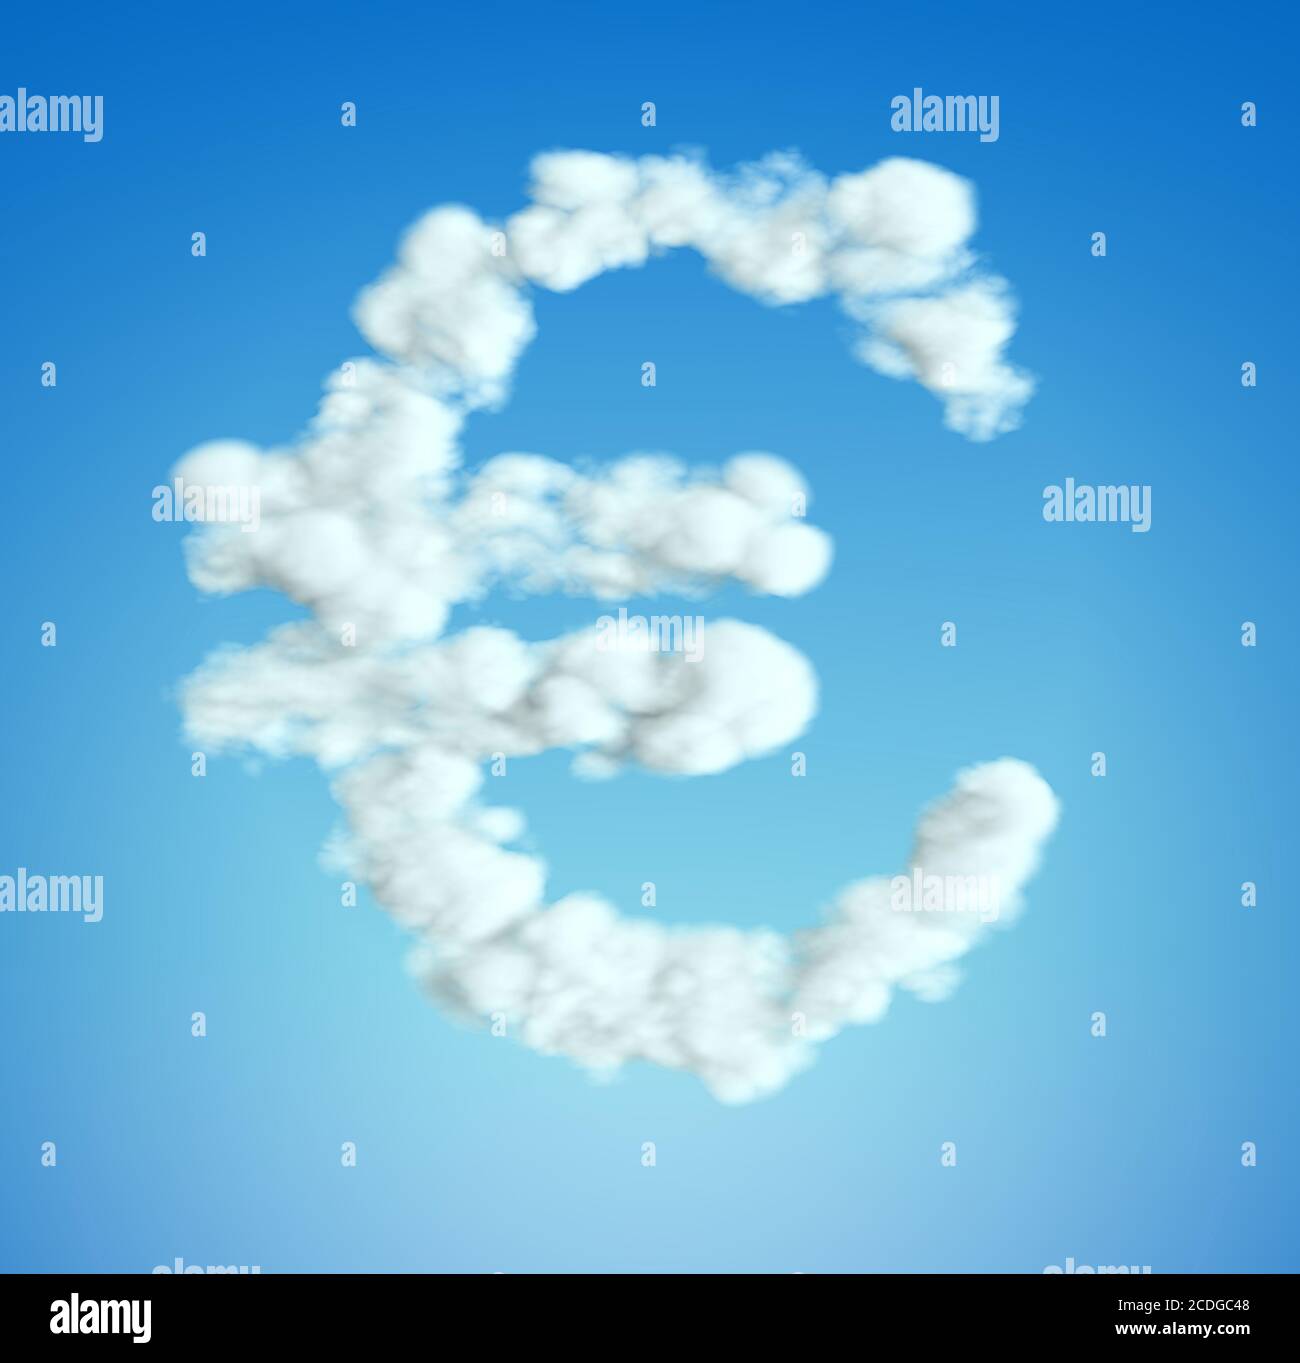 Forma del símbolo de moneda del euro en la nube Foto de stock